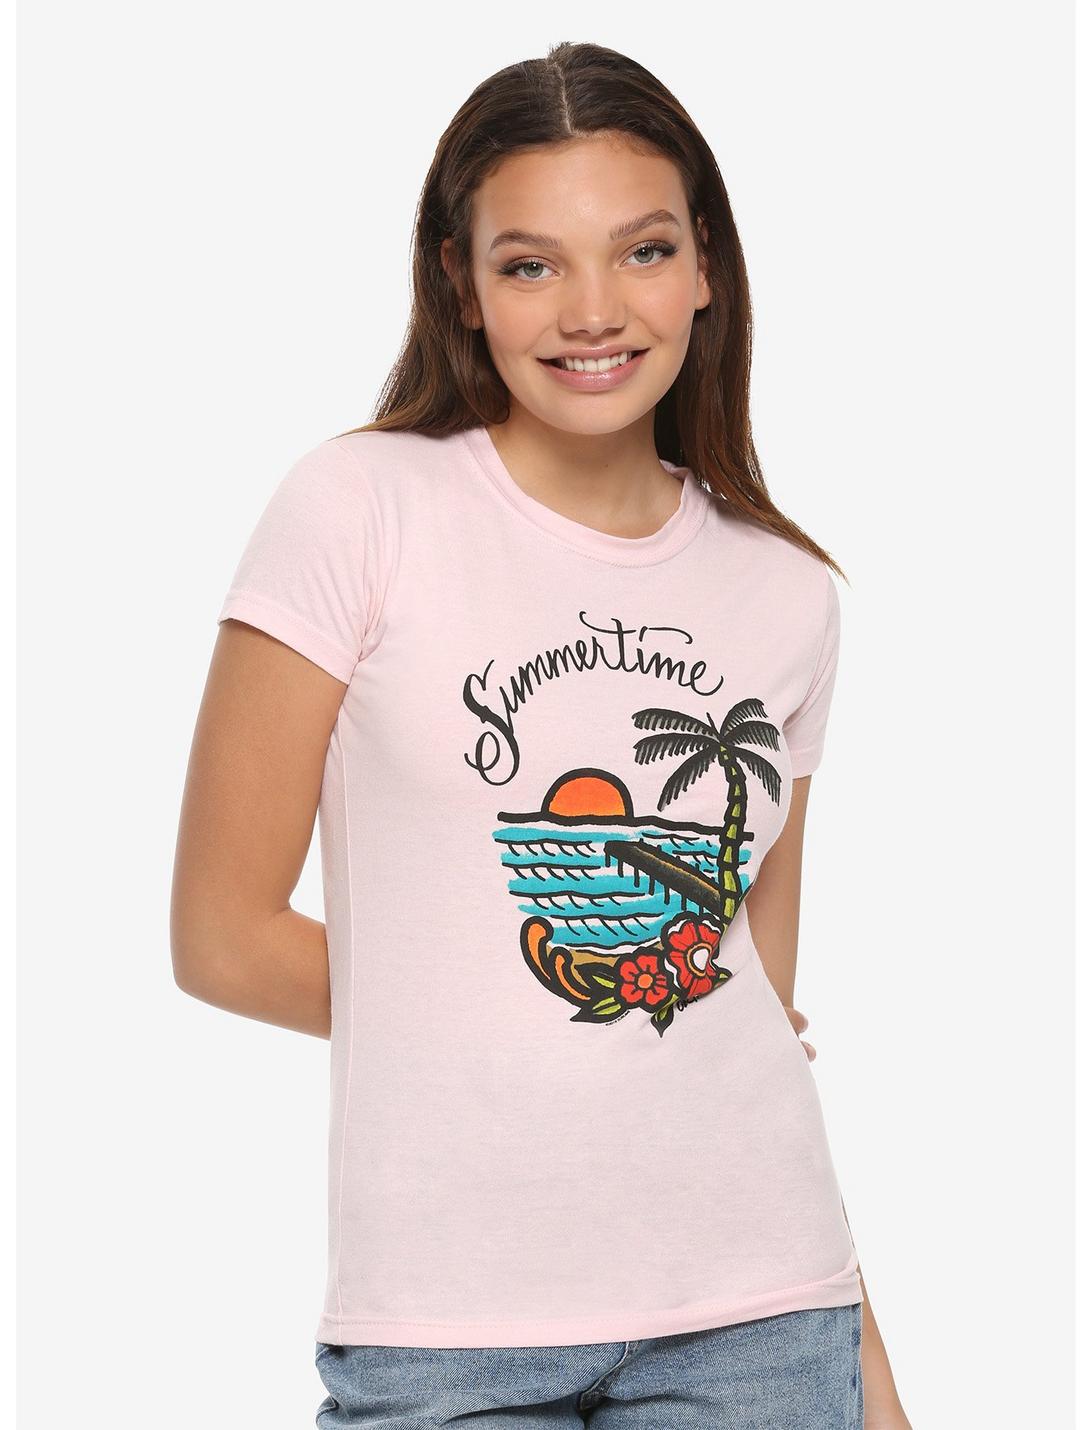 Sublime Summertime Girls T-Shirt, PINK, hi-res